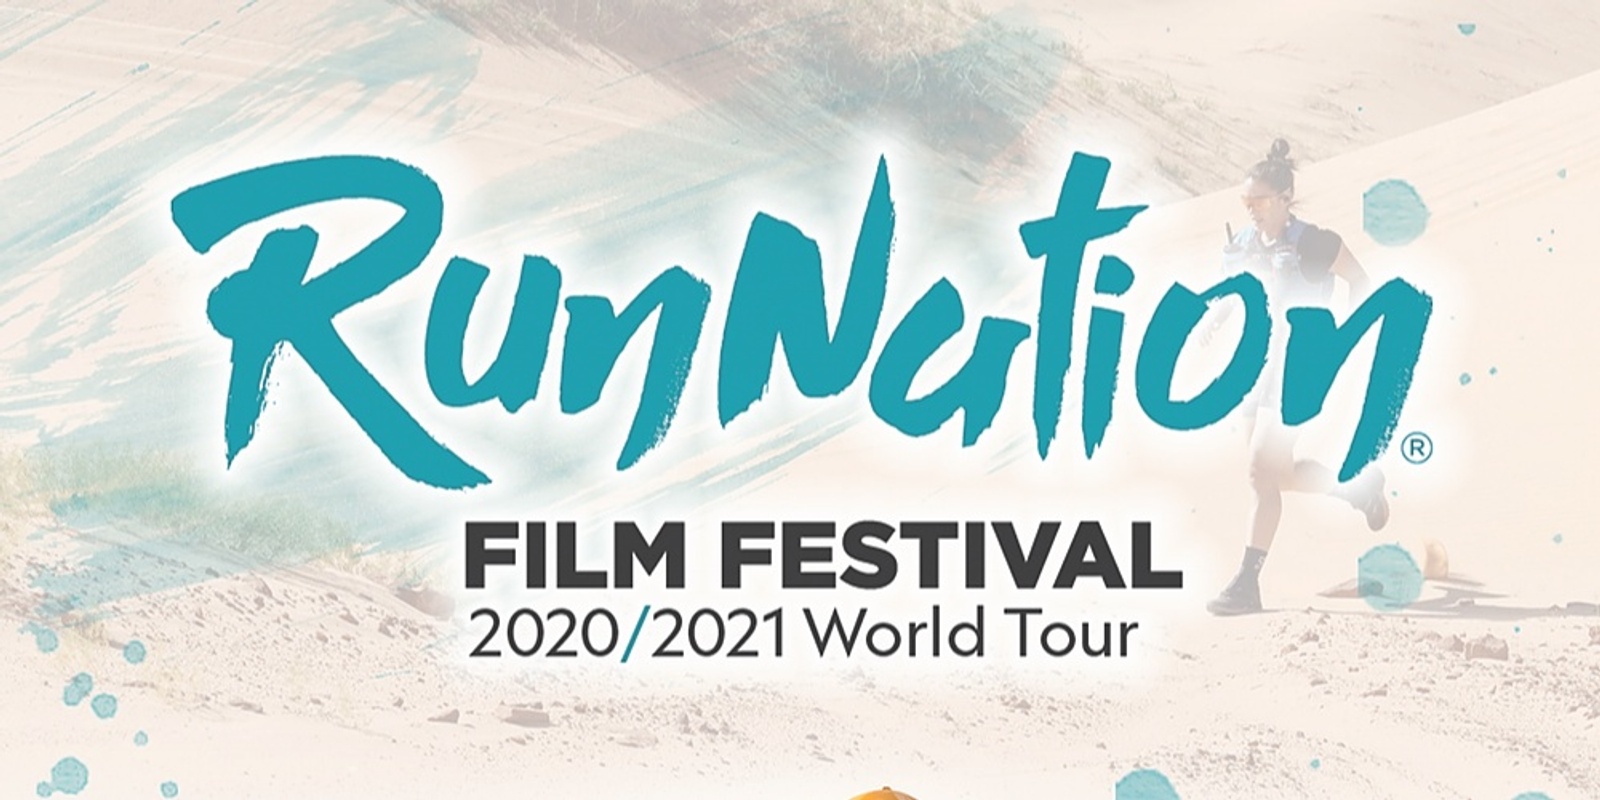 Banner image for Runnation Film Festival 20/21 World Tour